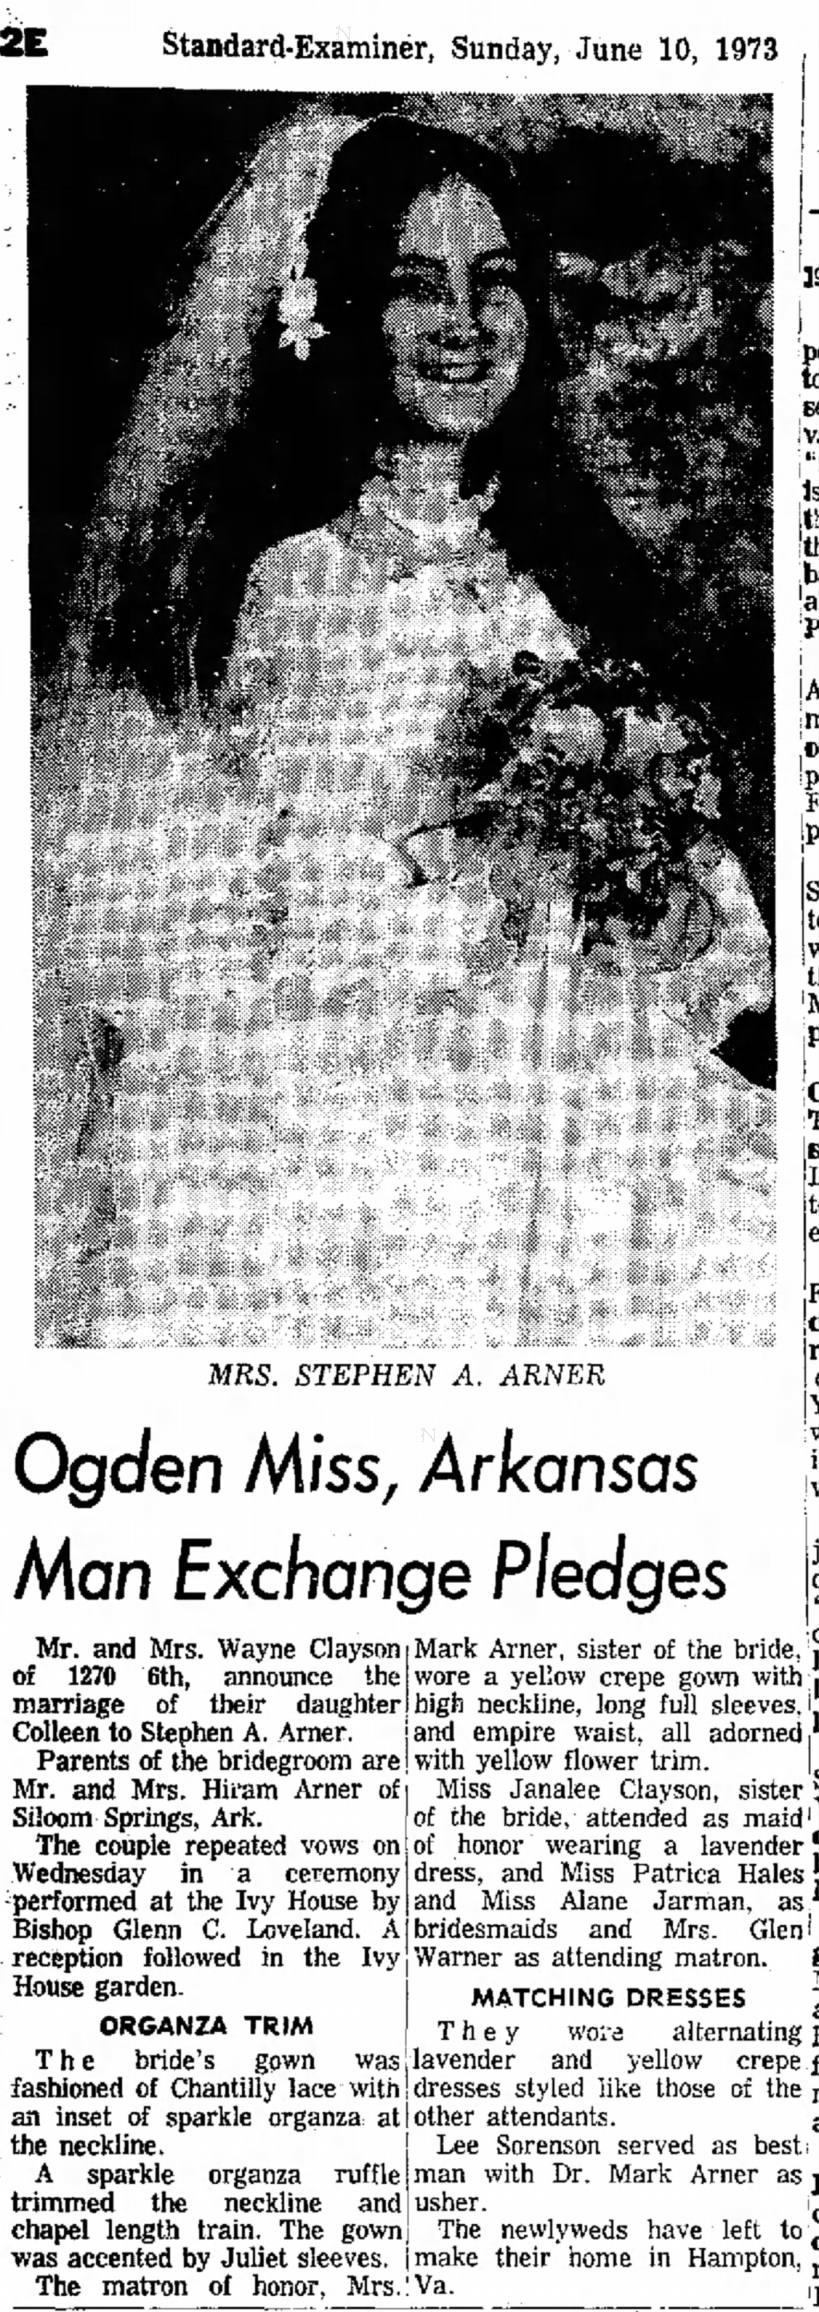 Stephen A. Arner marries Colleen Clayson in Utah in Jun 1973